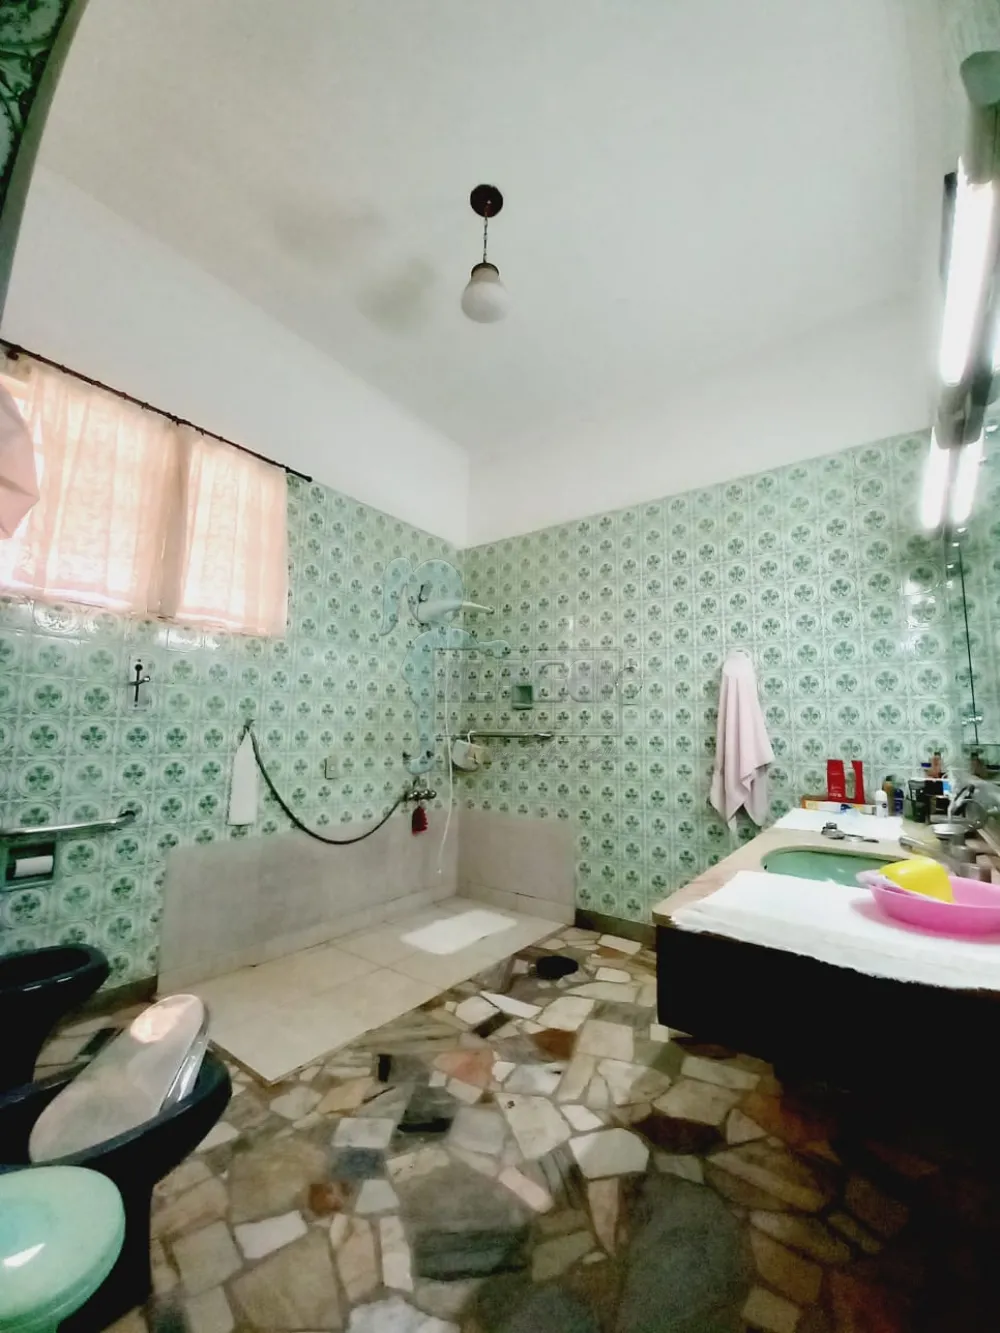 Alugar Casa / Padrão em Ribeirão Preto R$ 3.000,00 - Foto 11